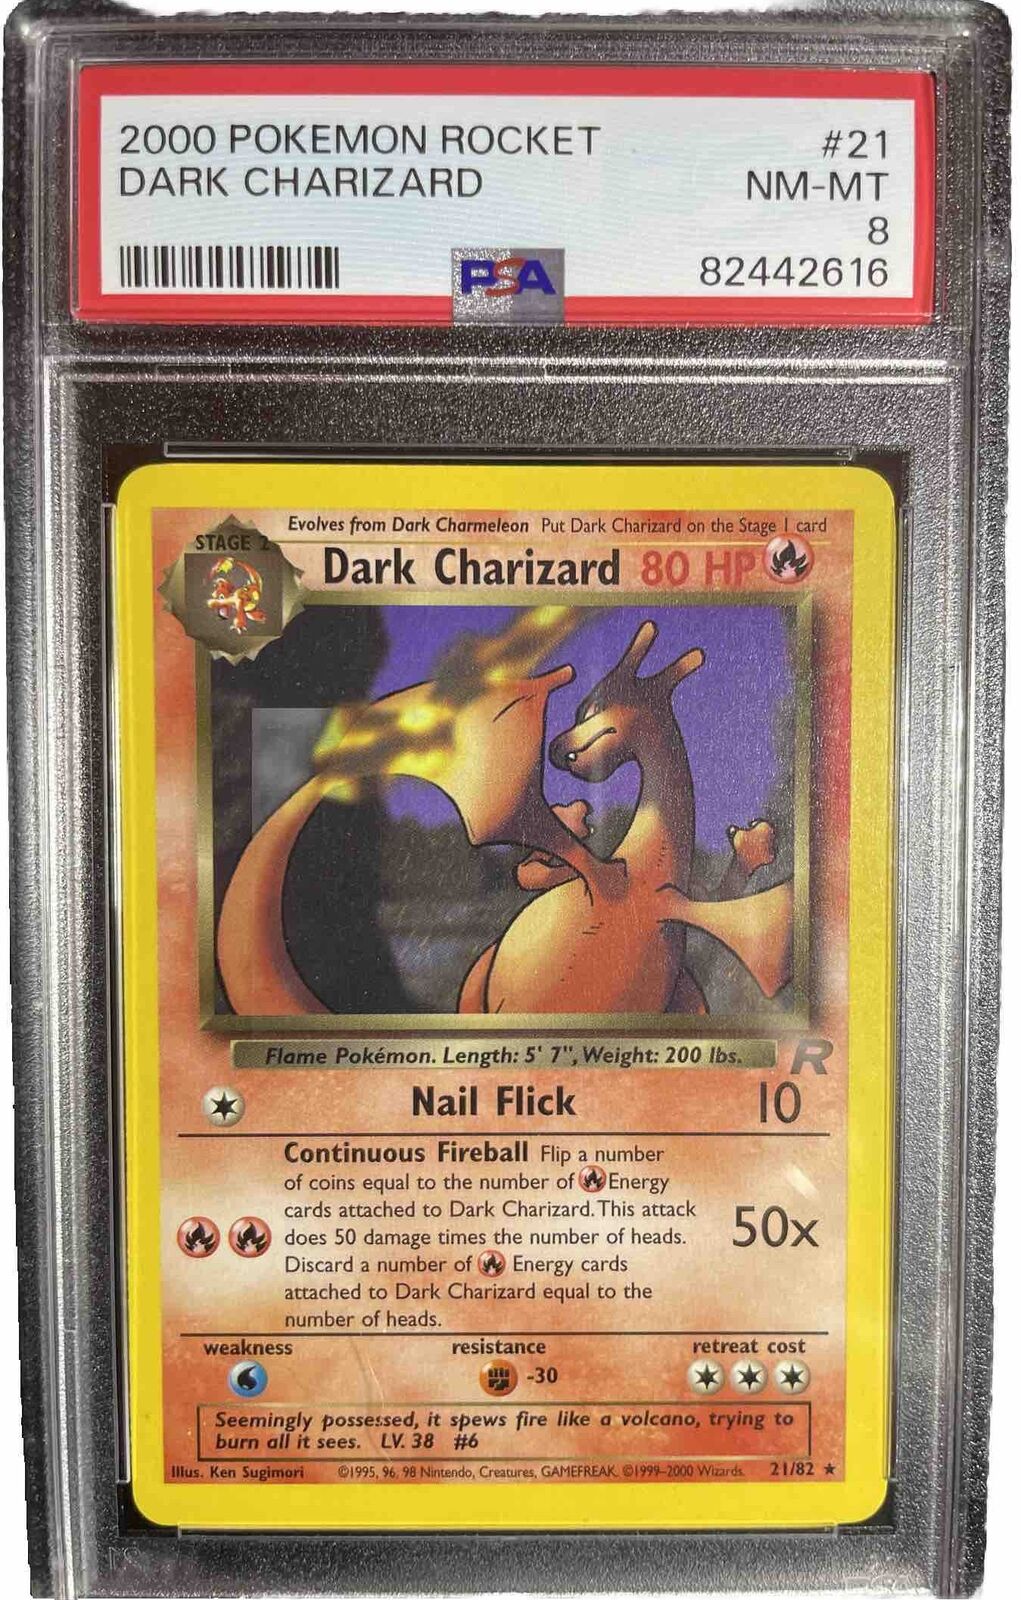 2000 Pokemon Rocket Dark Charizard #21 Graded PSA 8 NM-MT MINT